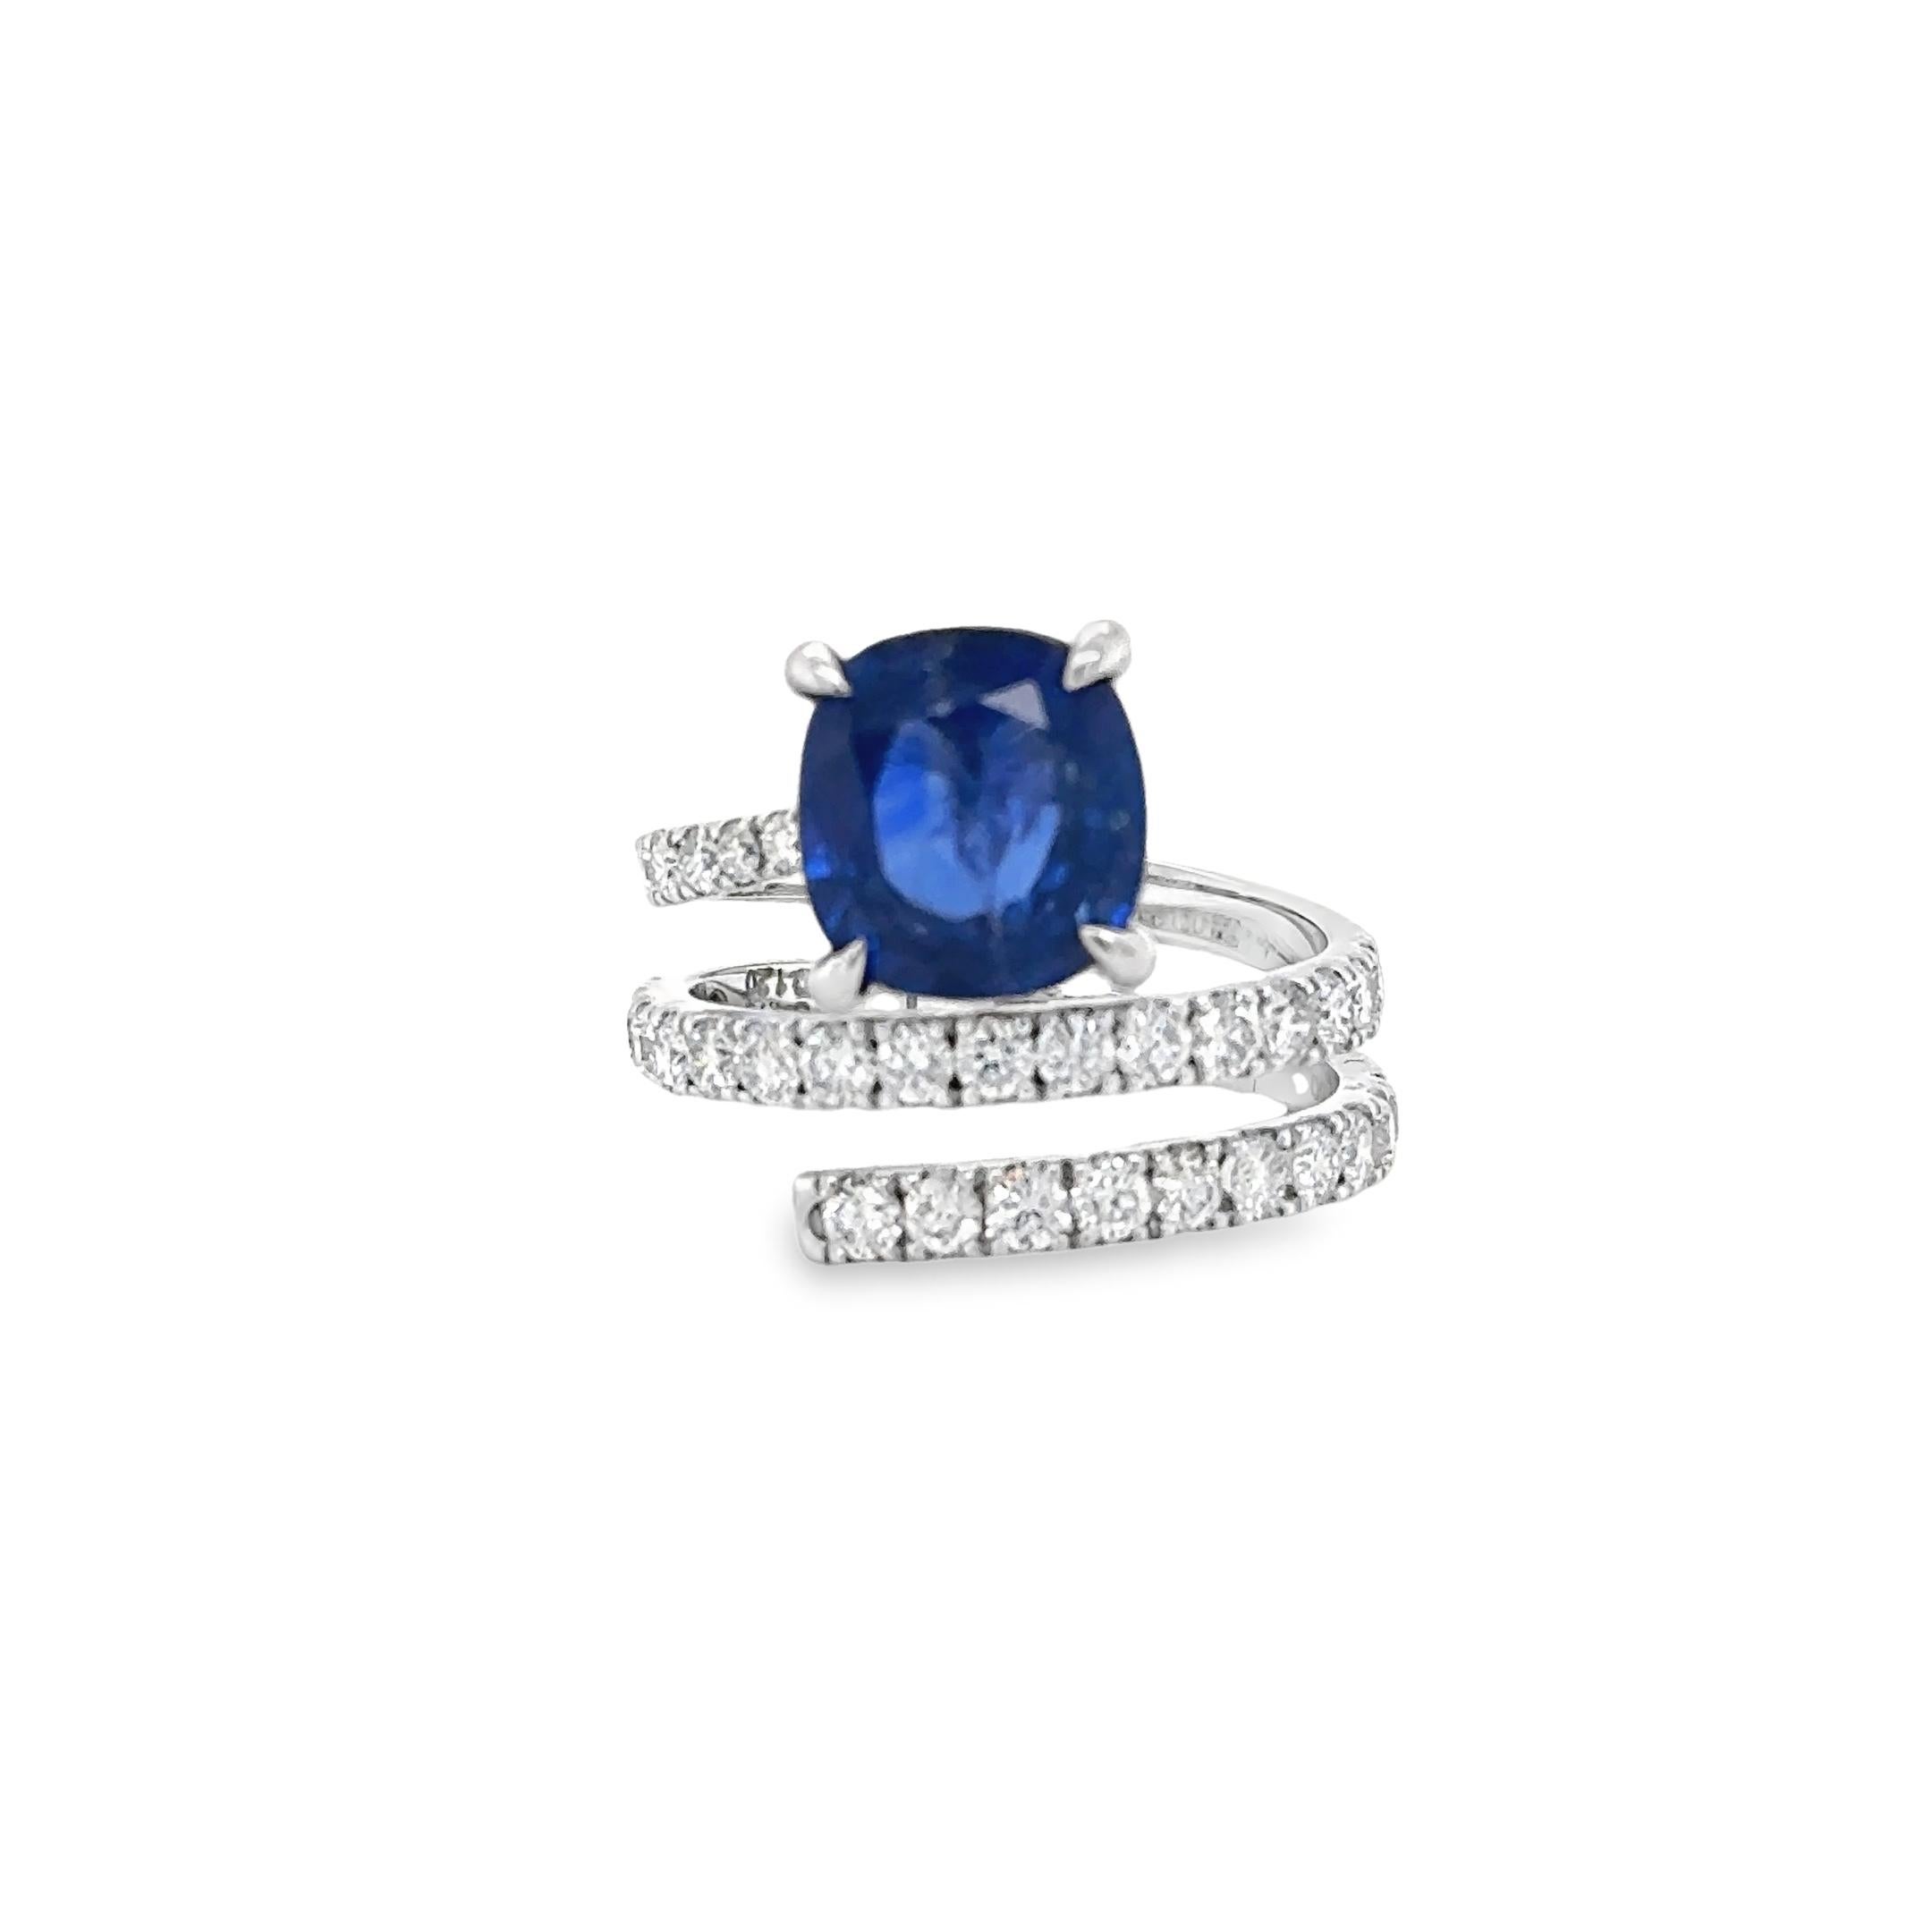 Dieser atemberaubende Ring mit gestapelten Diamanten und blauem Saphir ist mit einem natürlichen Saphir im Kushion-Mischschliff und sechsunddreißig natürlichen Diamanten im Brillantschliff besetzt. 

DETAILS :

✦Mittelpunkt : Natürlicher blauer